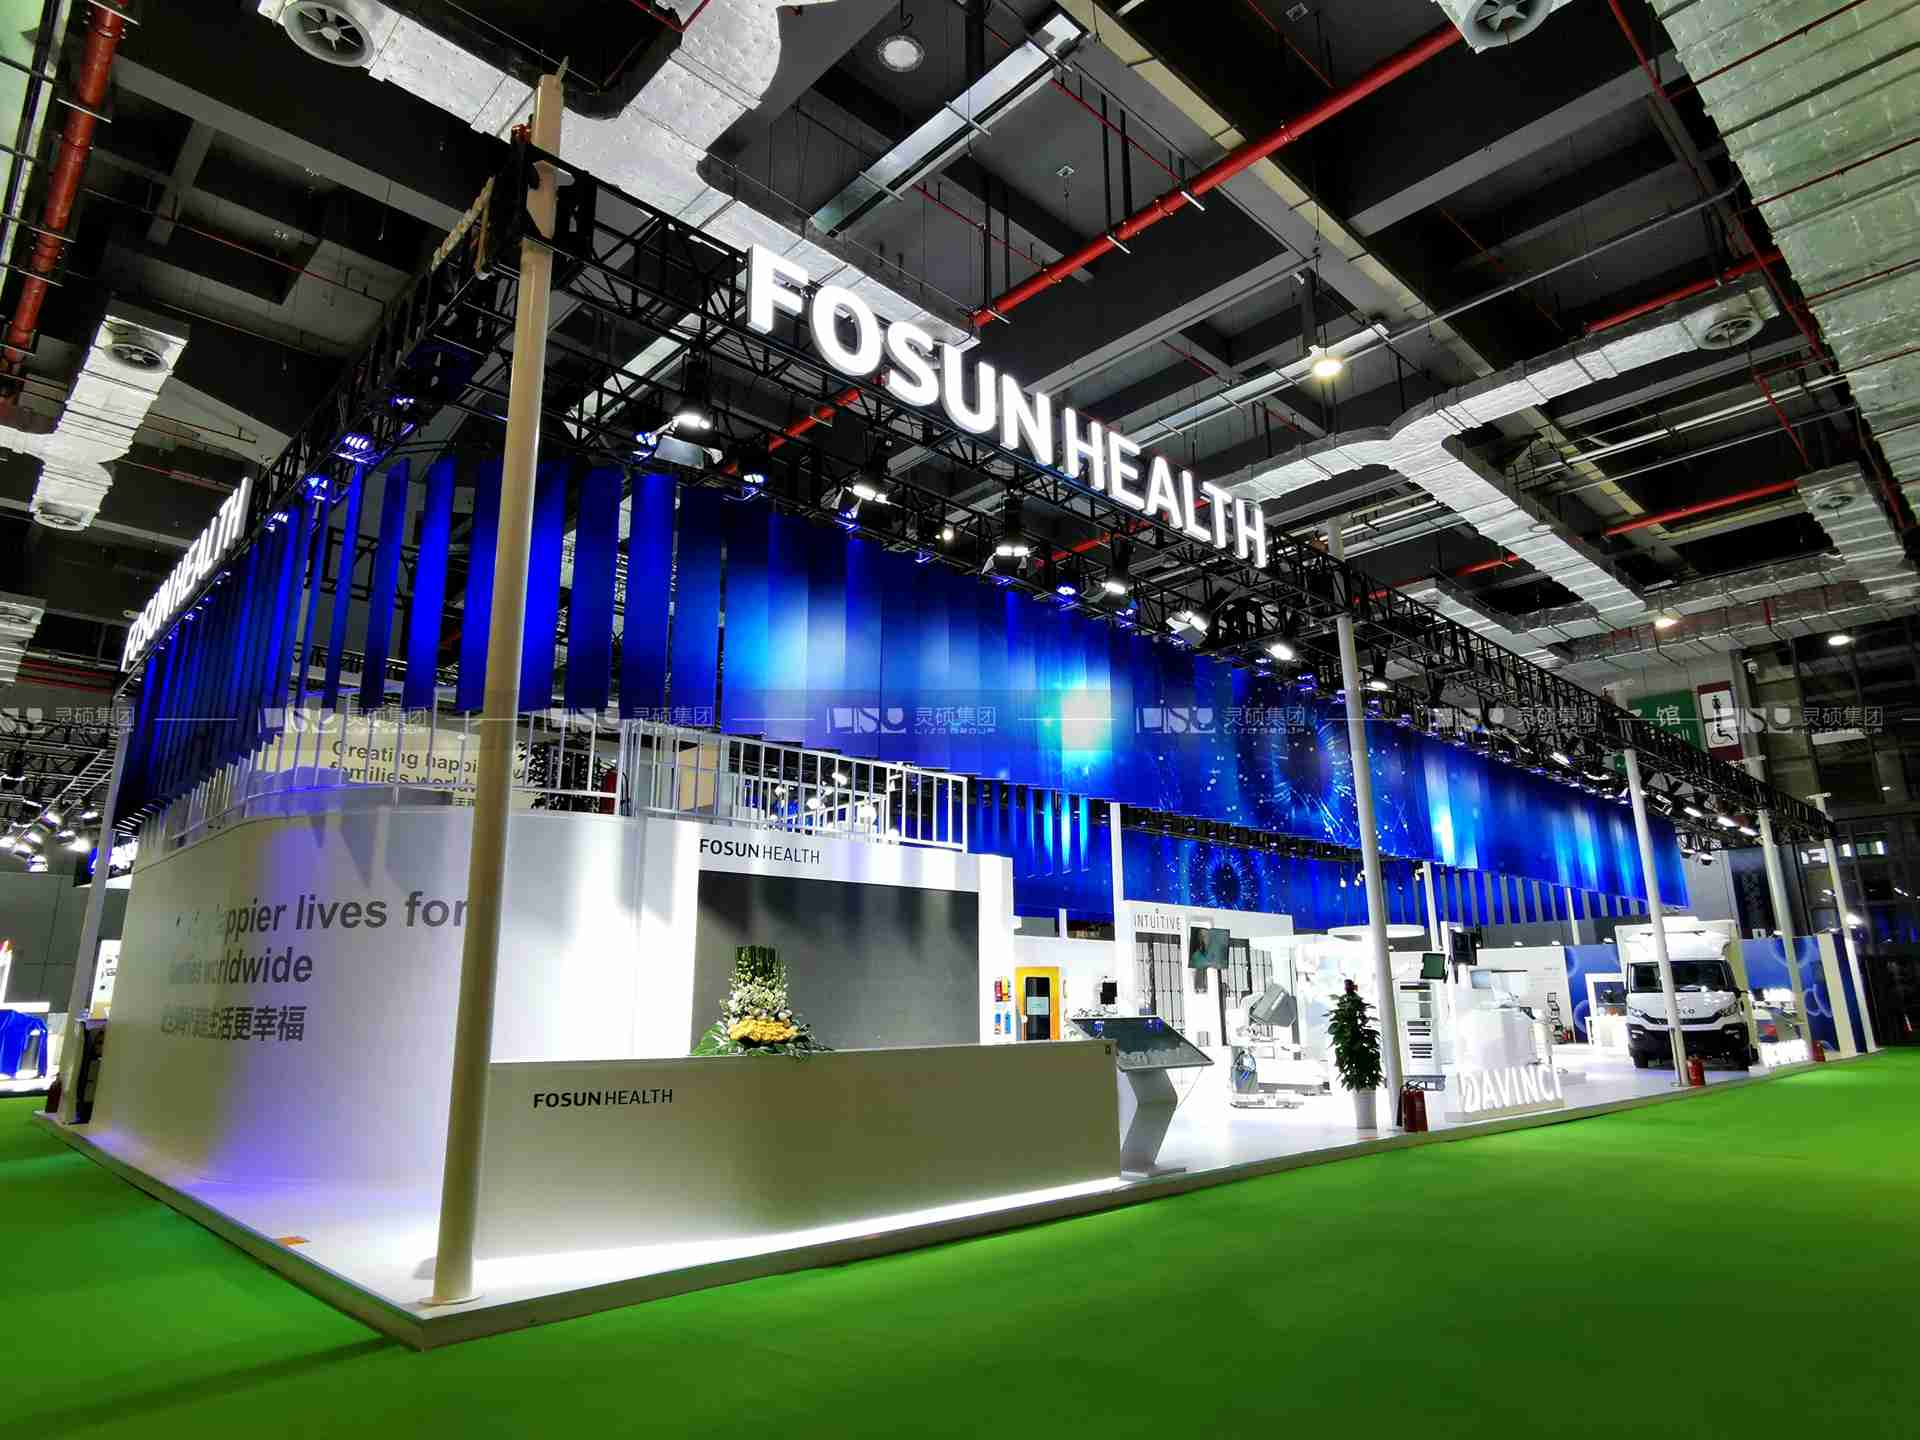 复星Fosun Health-2019年第二届进博会展台设计案例